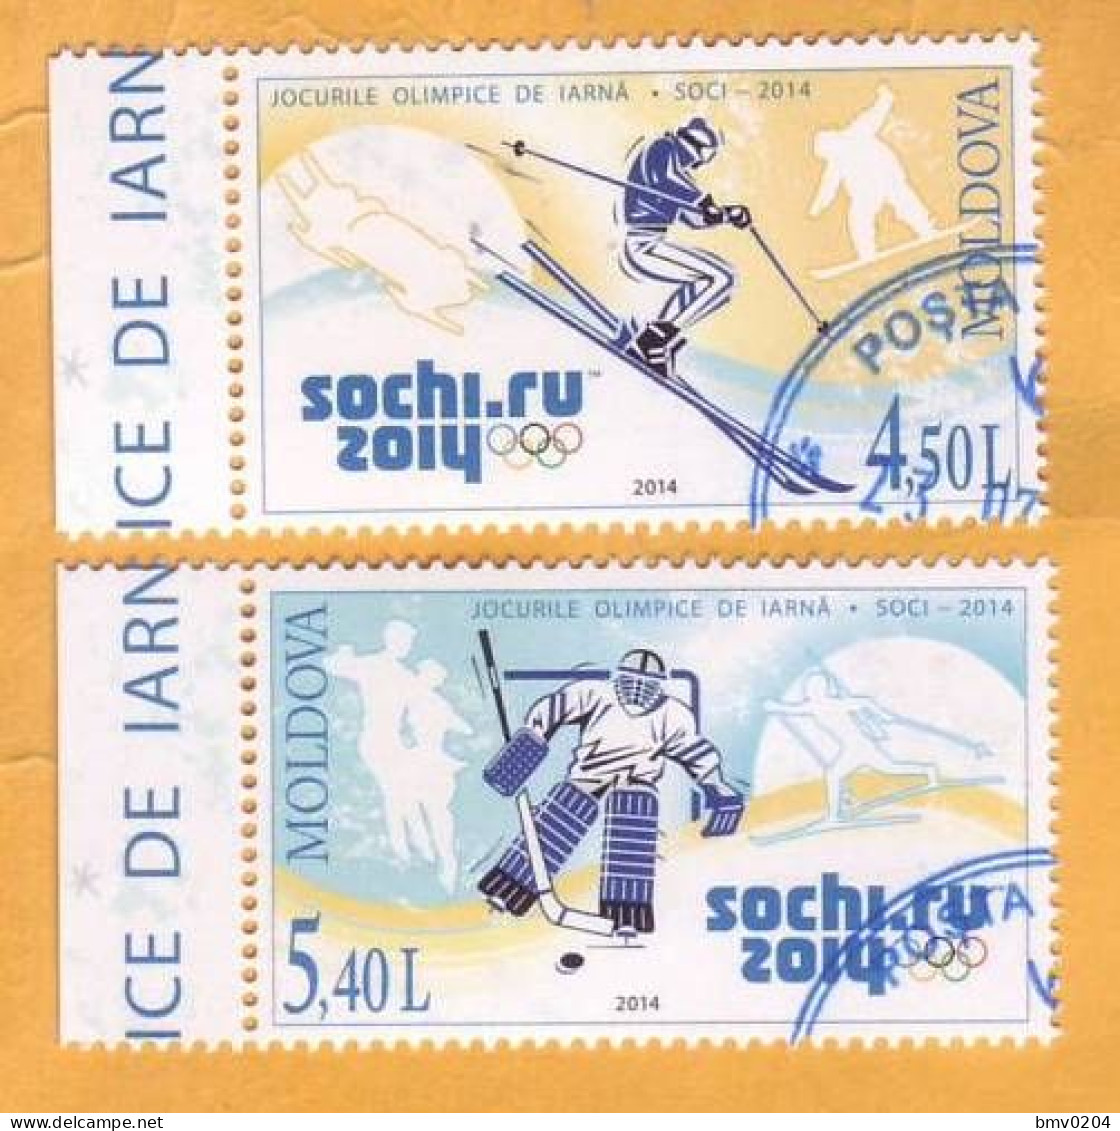 2014 Moldova Moldavie Moldau  Used  Winter Olympic Games Sochi Russia  4х2v - Hiver 2014: Sotchi